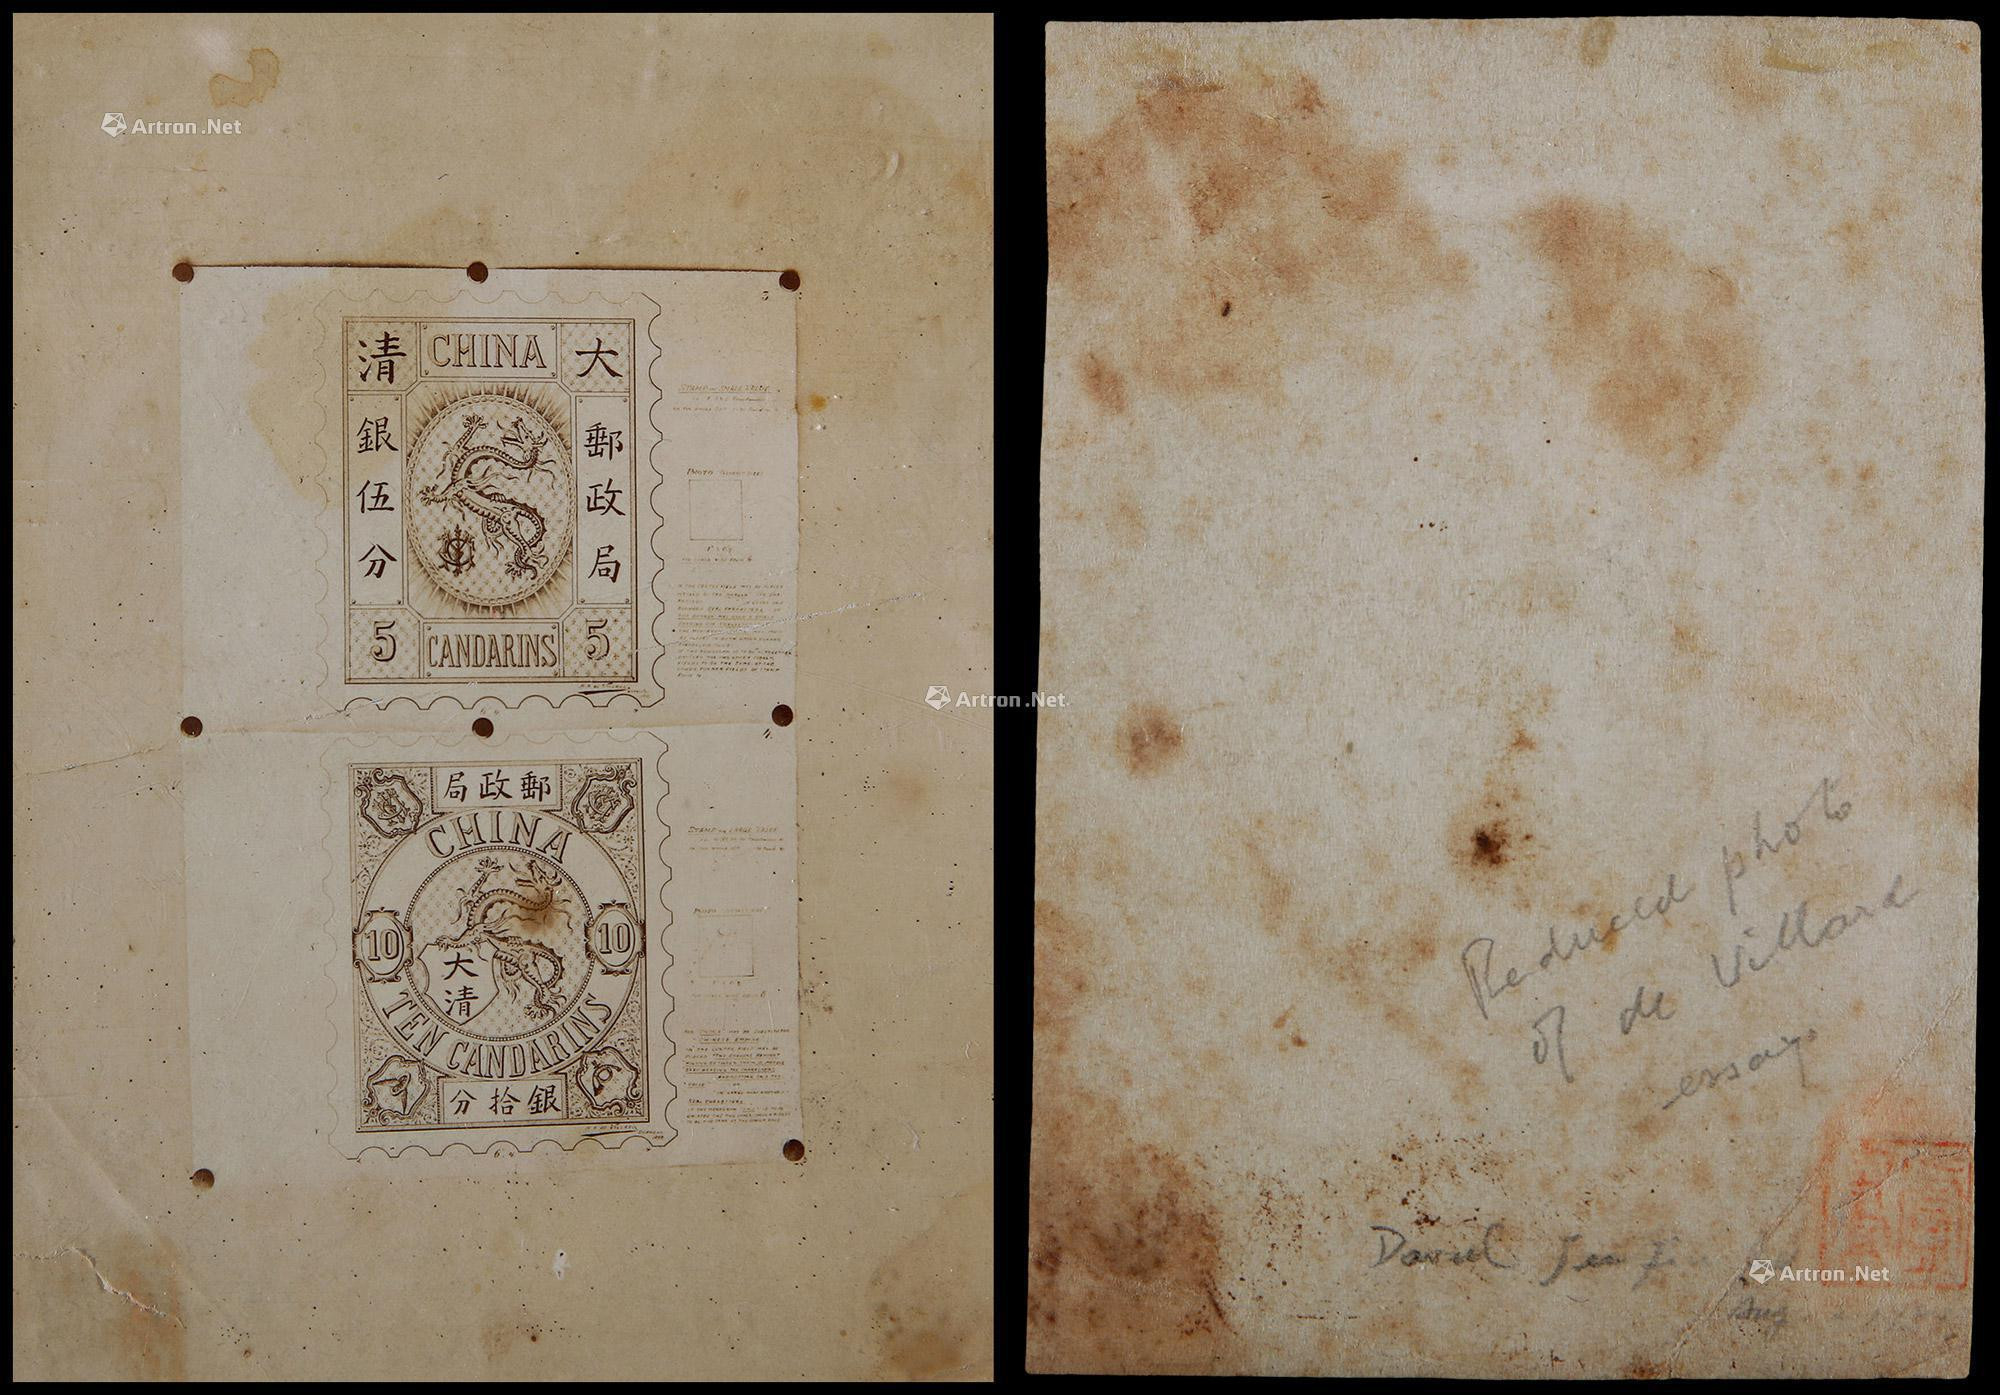 1894年慈禧太后六十寿辰纪念邮票设计图稿一件